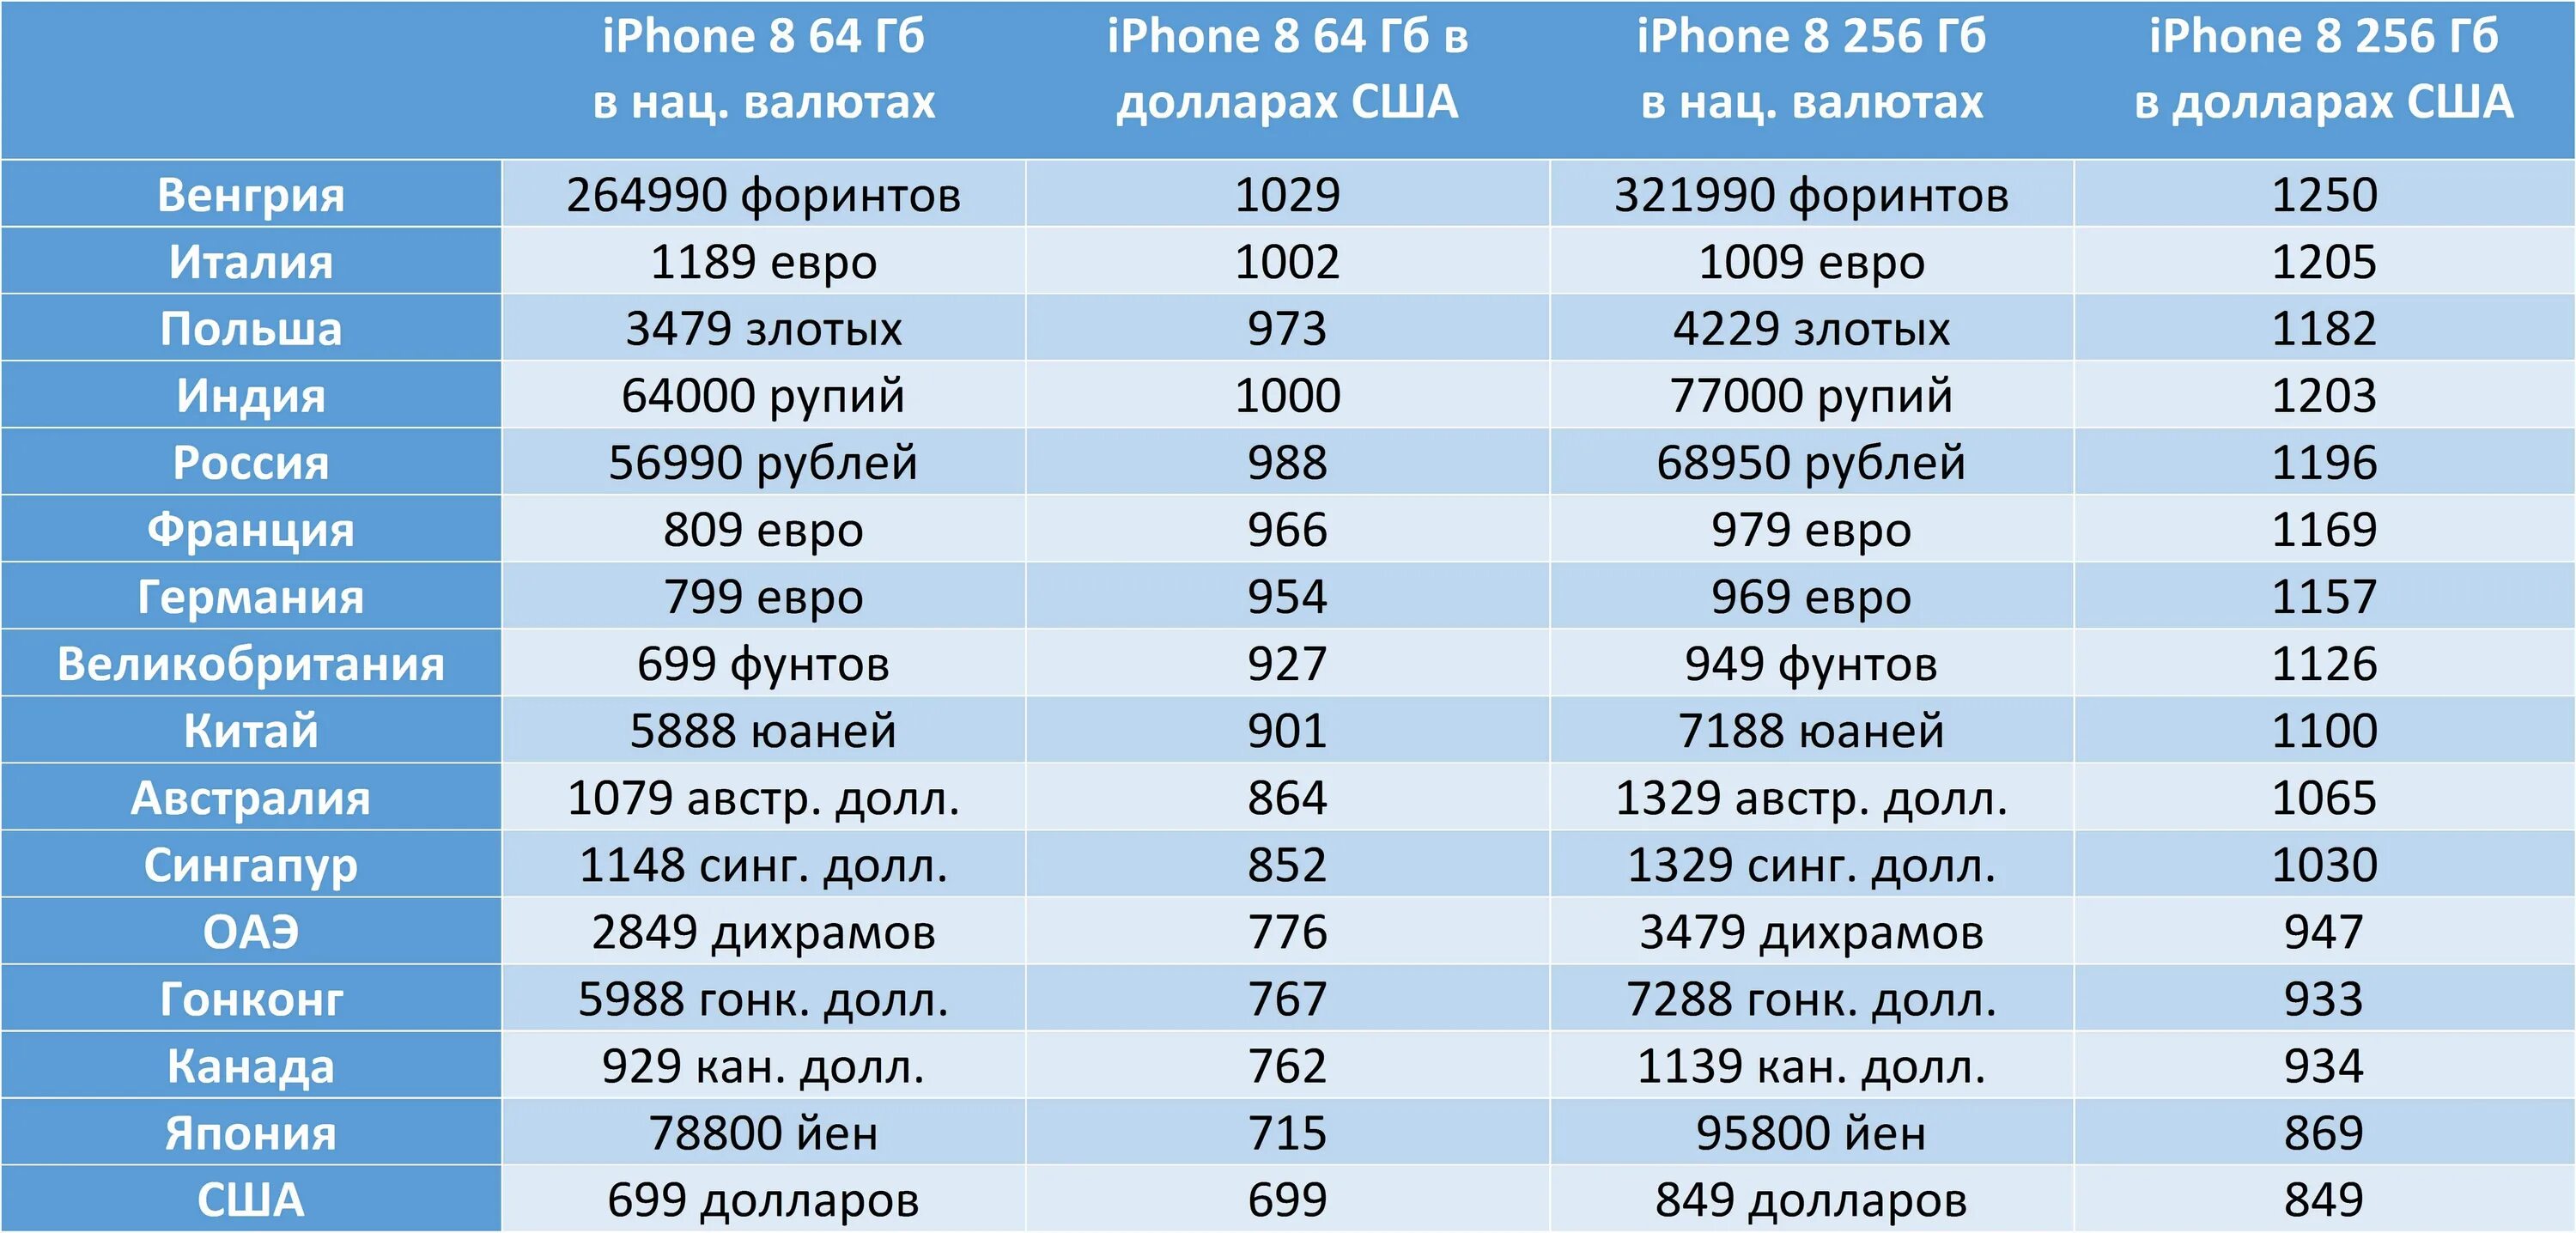 Количество проданных айфонов по странам. Количество айфонов в Америке. Самые дешевые айфоны по странам. В какой стране продаются самые дешевые айфоны. В какой стране айфон дешевле